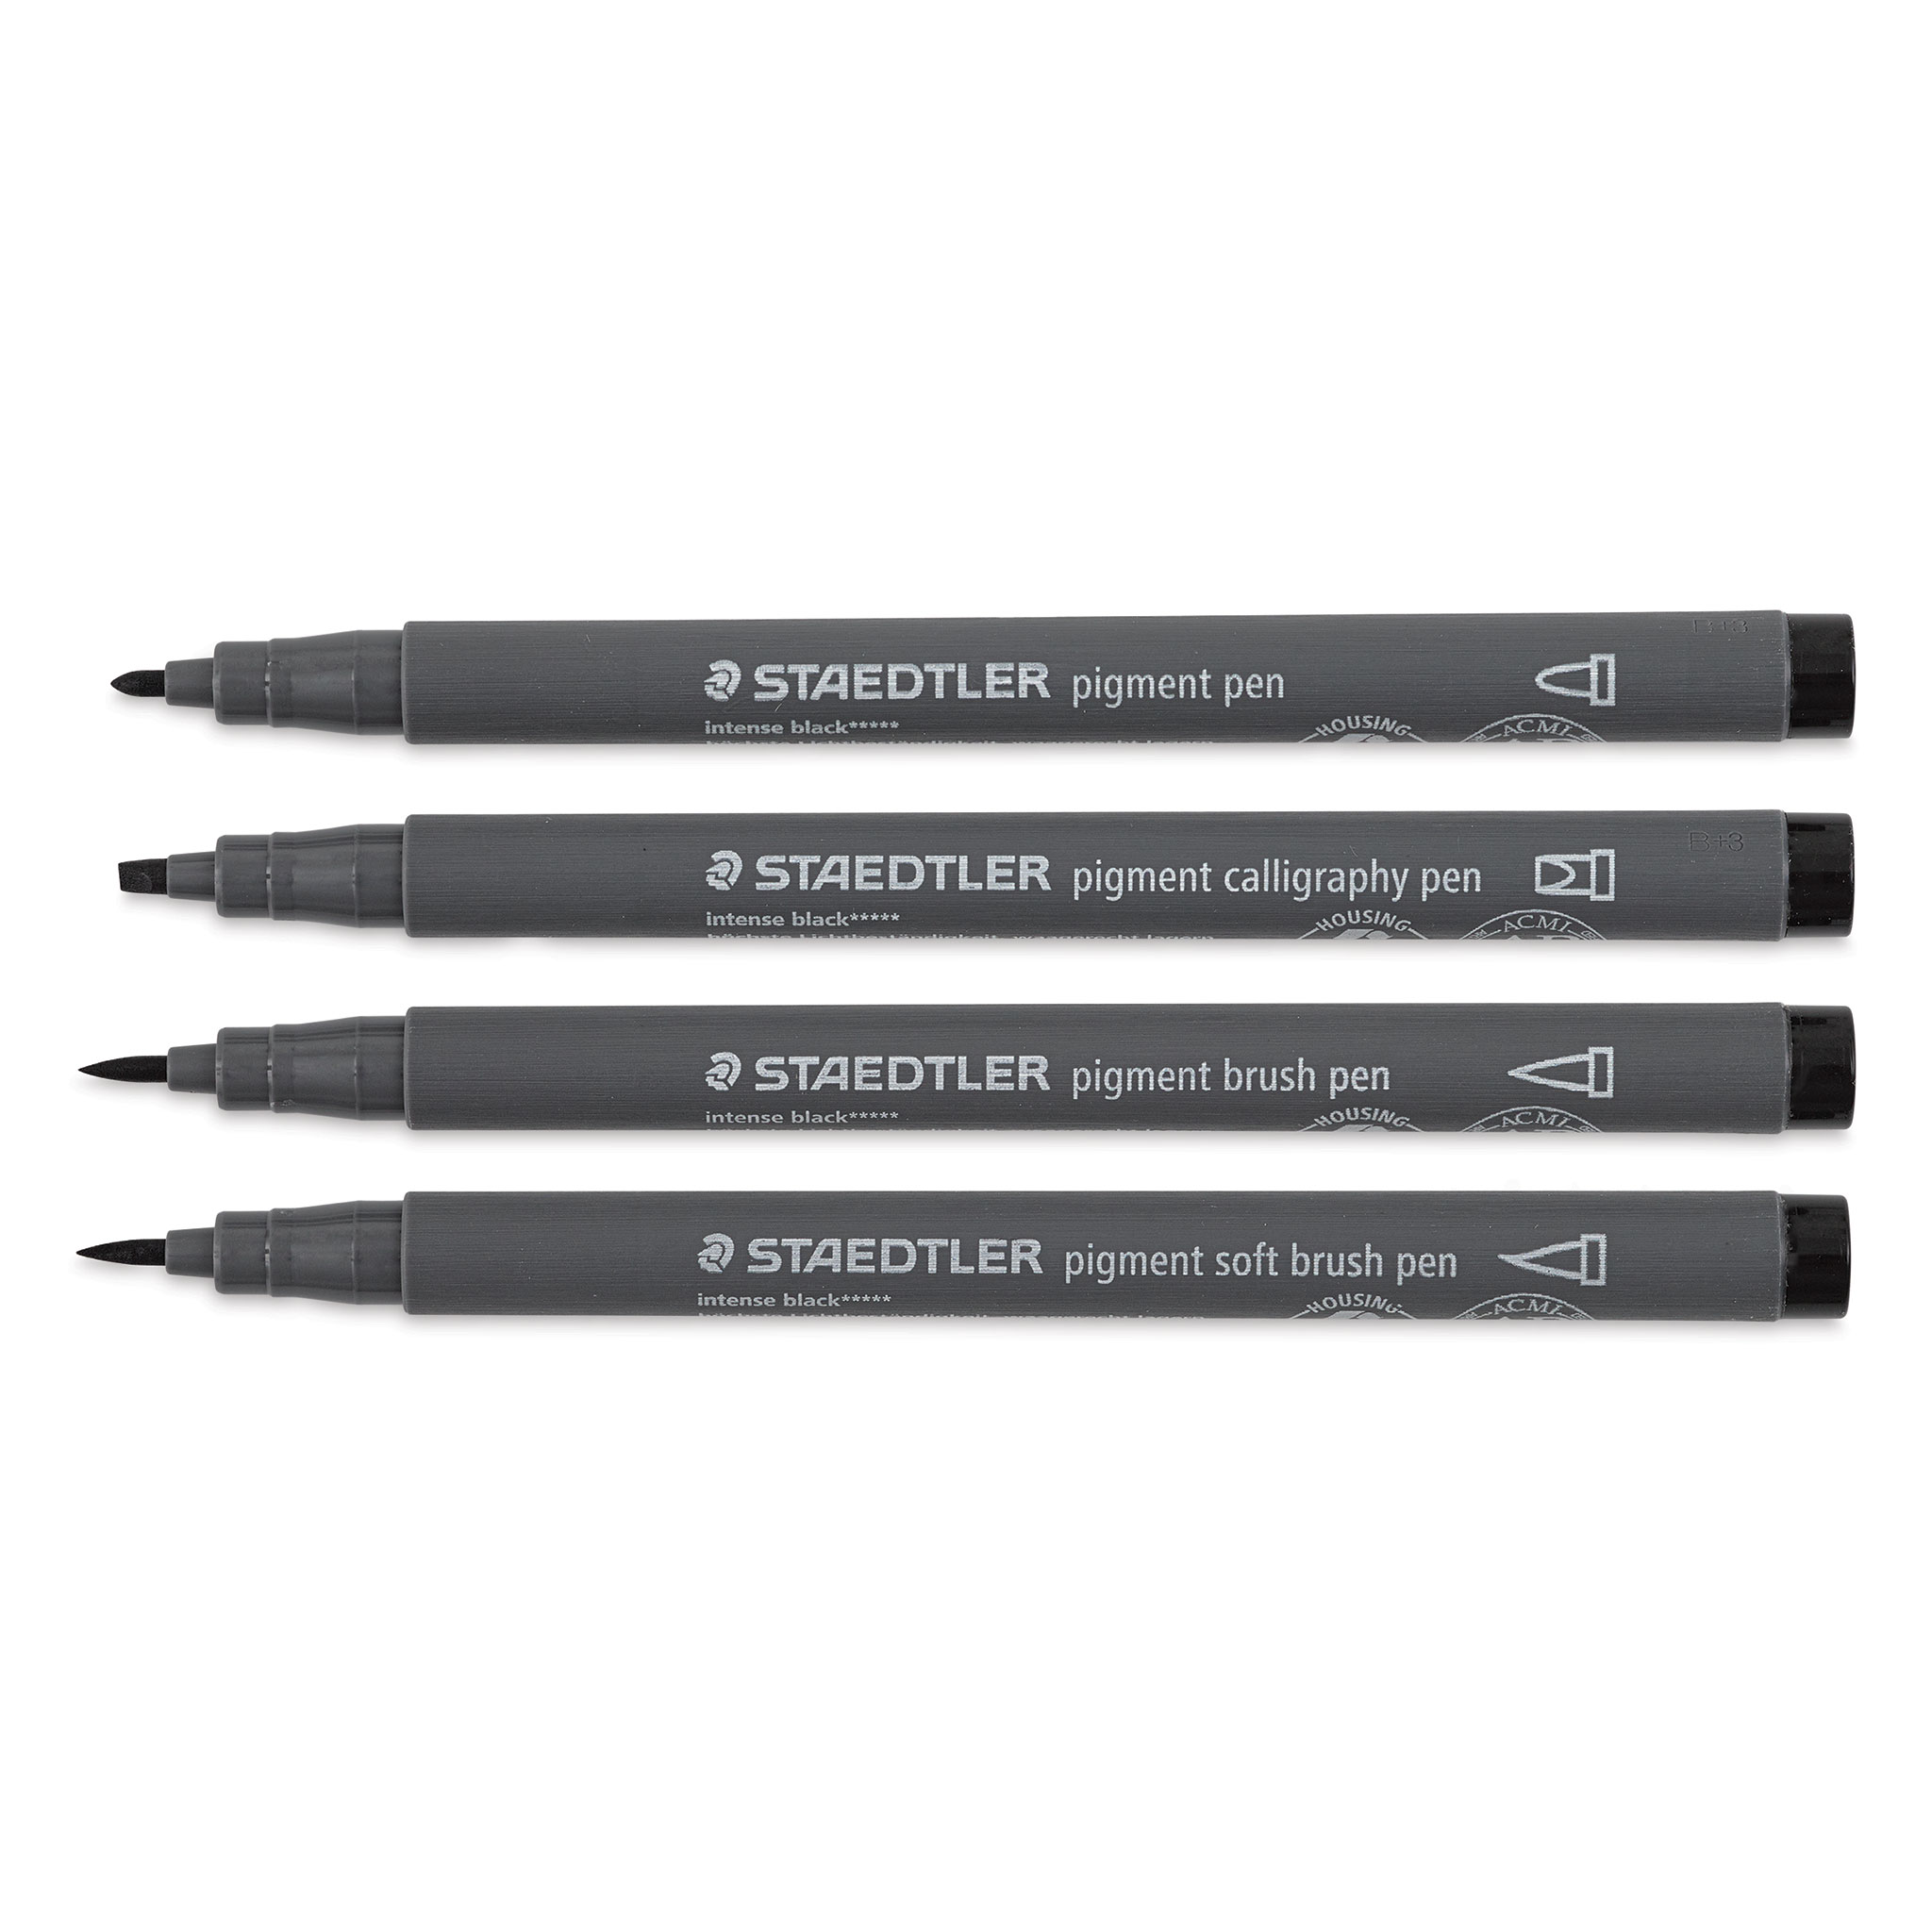 Staedtler Pigment Liner Pens and Sets